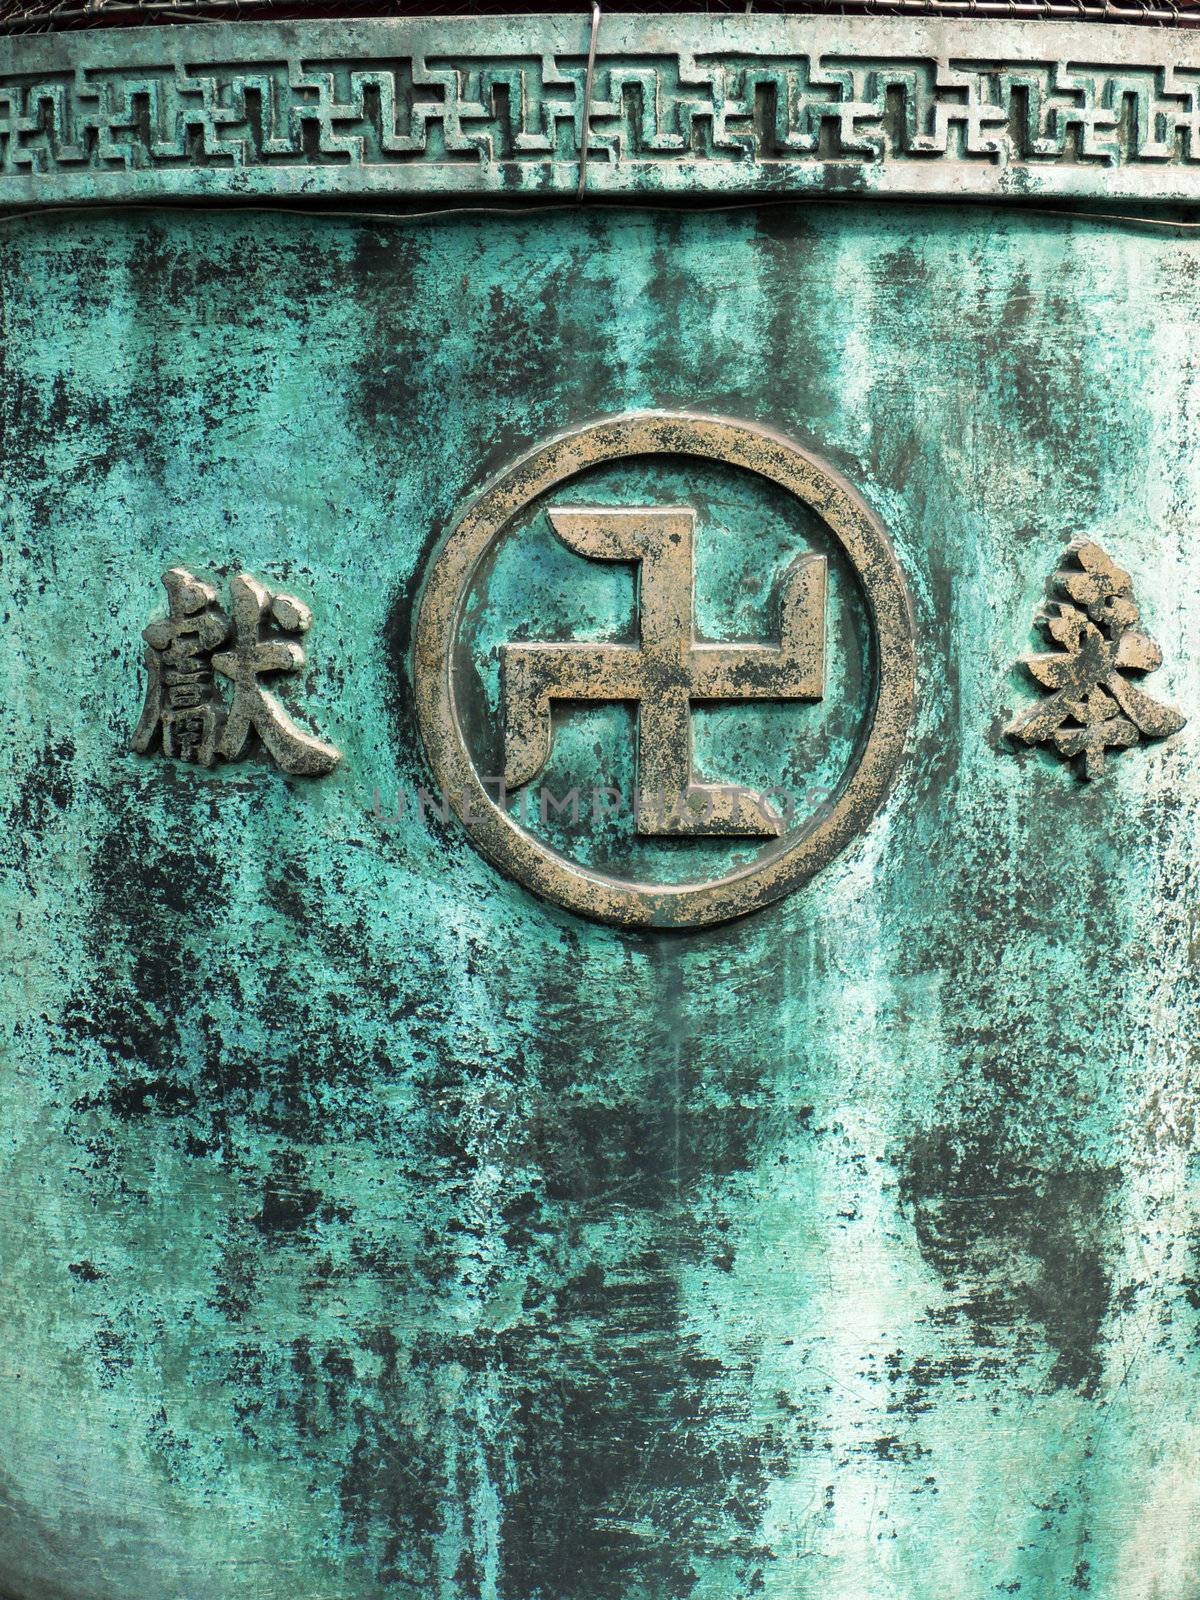 Sanskrit buddhist symbol written on the religious ash-urn wall